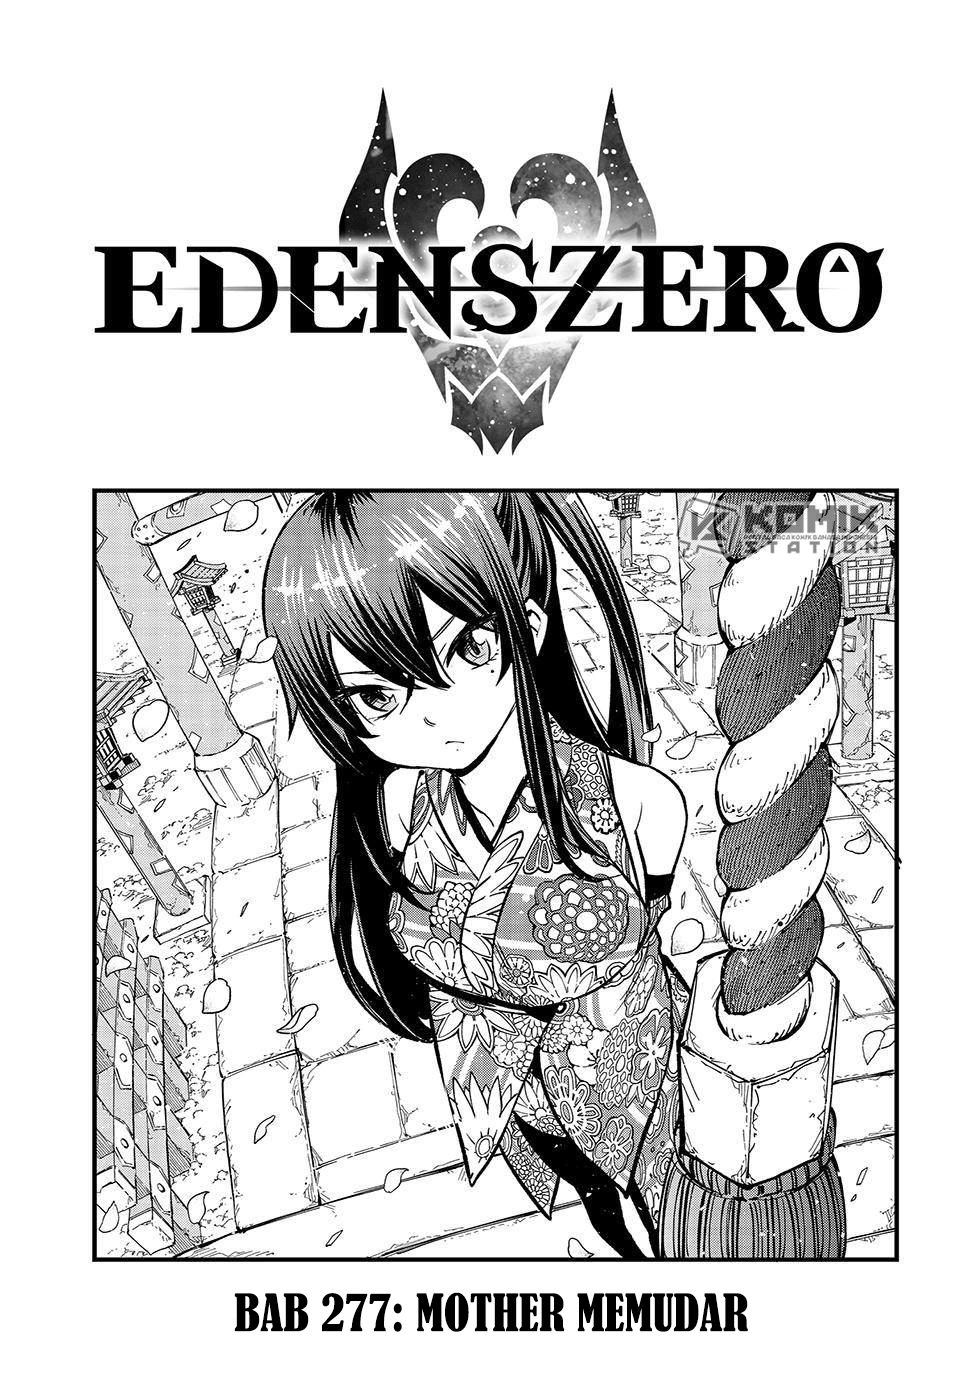 Eden’s Zero Chapter 277